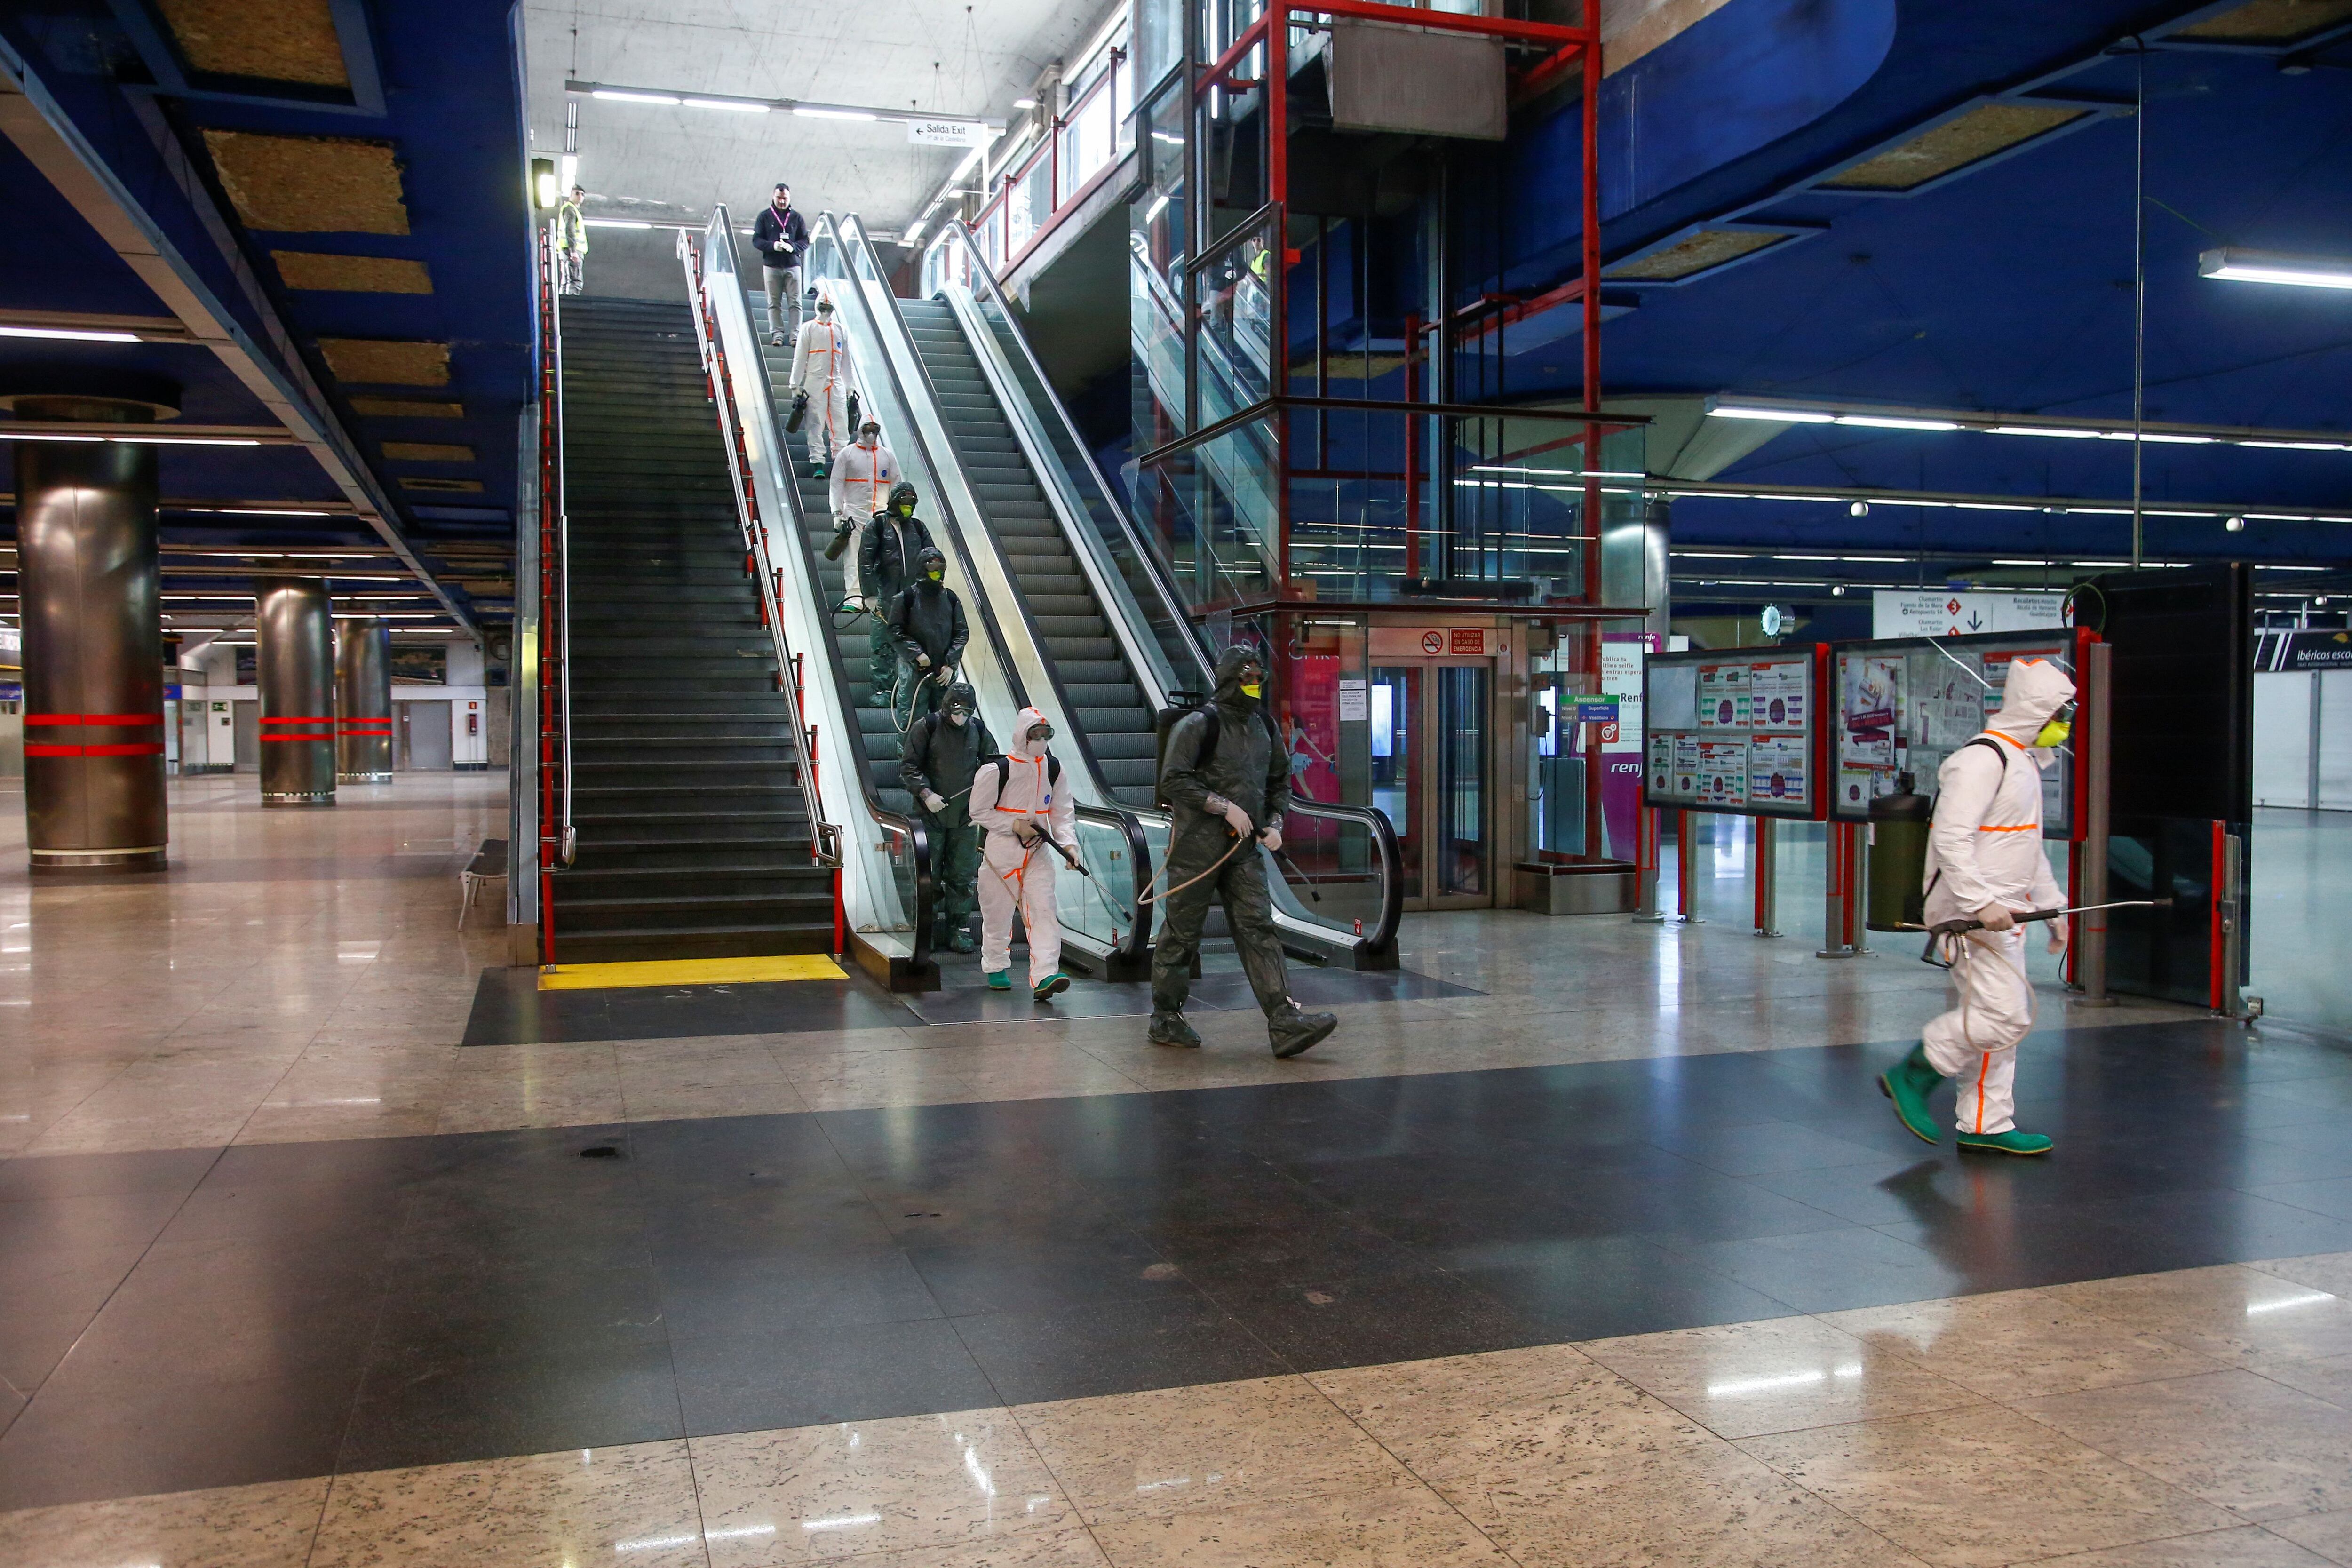 Fuerzas militares de emergencia desinfectan la estación de metro Nuevos ministerios en la capital española. 